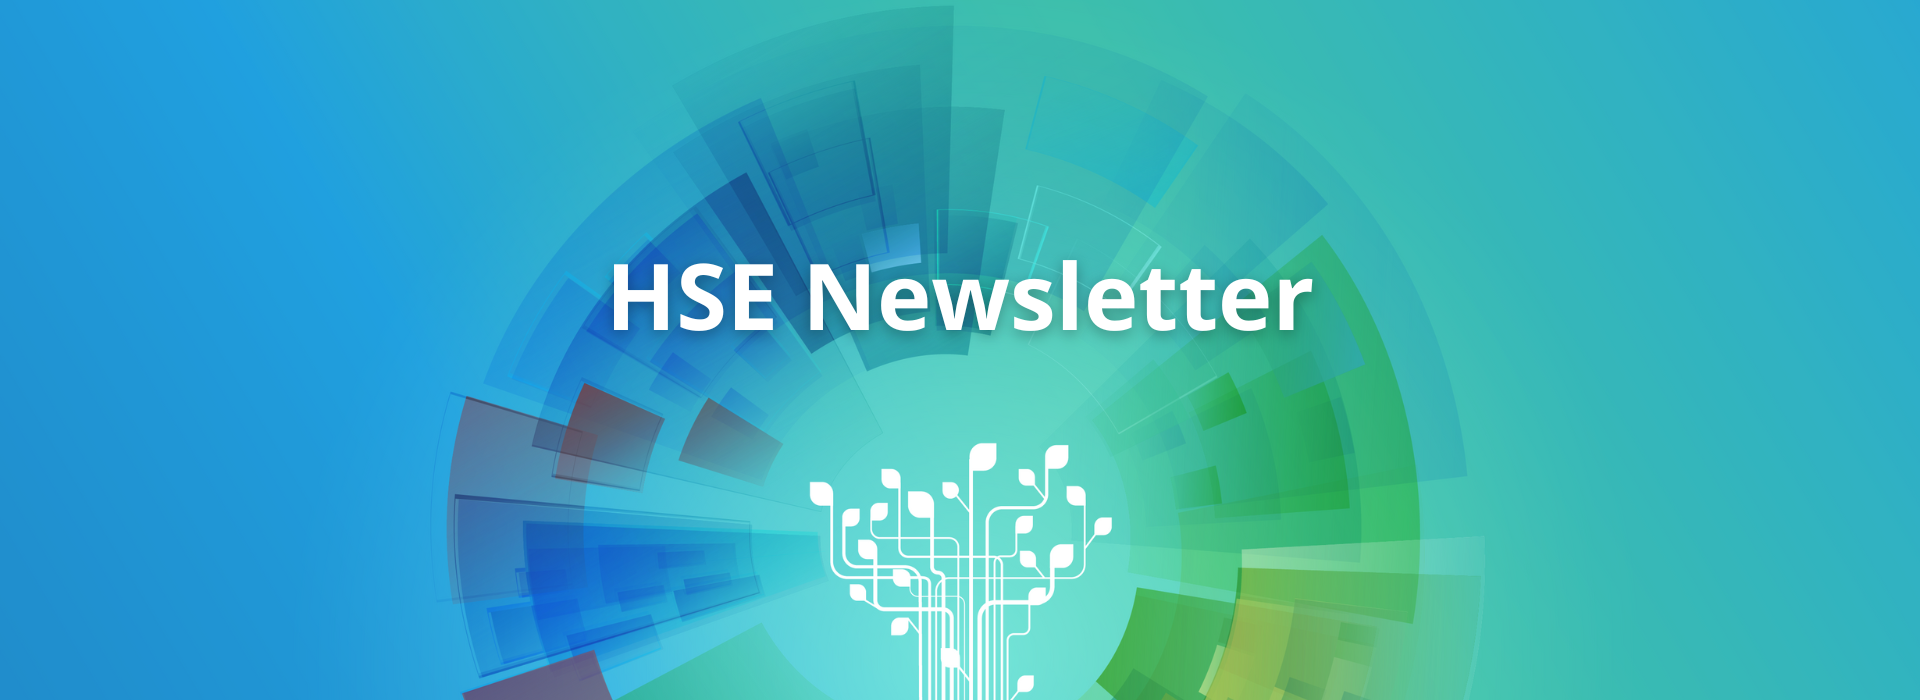 HSE-Newsletter_banner